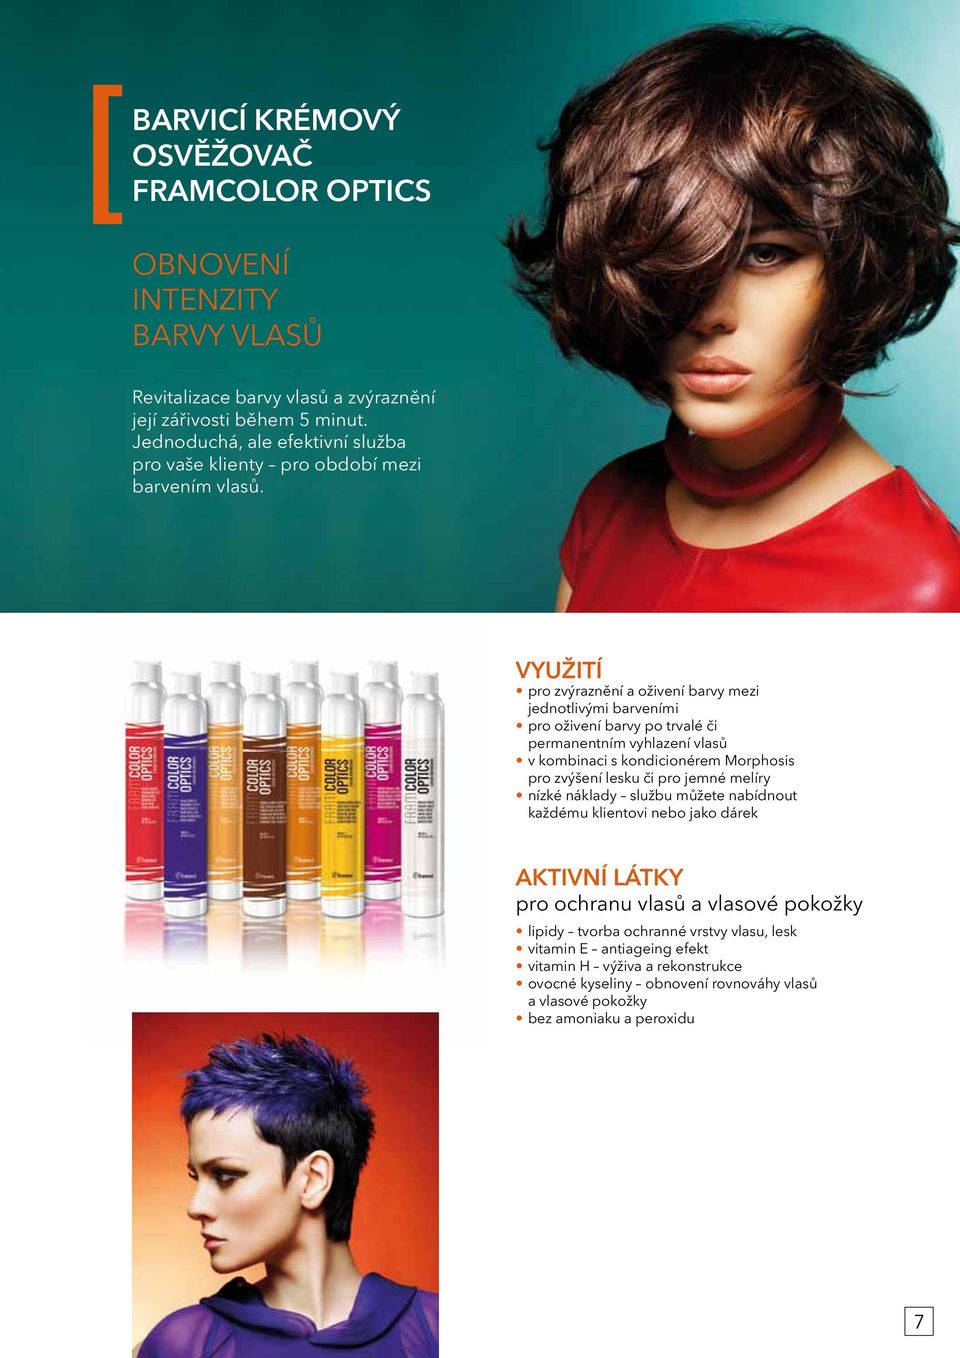 VYUŽITÍ pro zvýraznění a oživení barvy mezi jednotlivými barveními pro oživení barvy po trvalé či permanentním vyhlazení vlasů v kombinaci s kondicionérem Morphosis pro zvýšení lesku